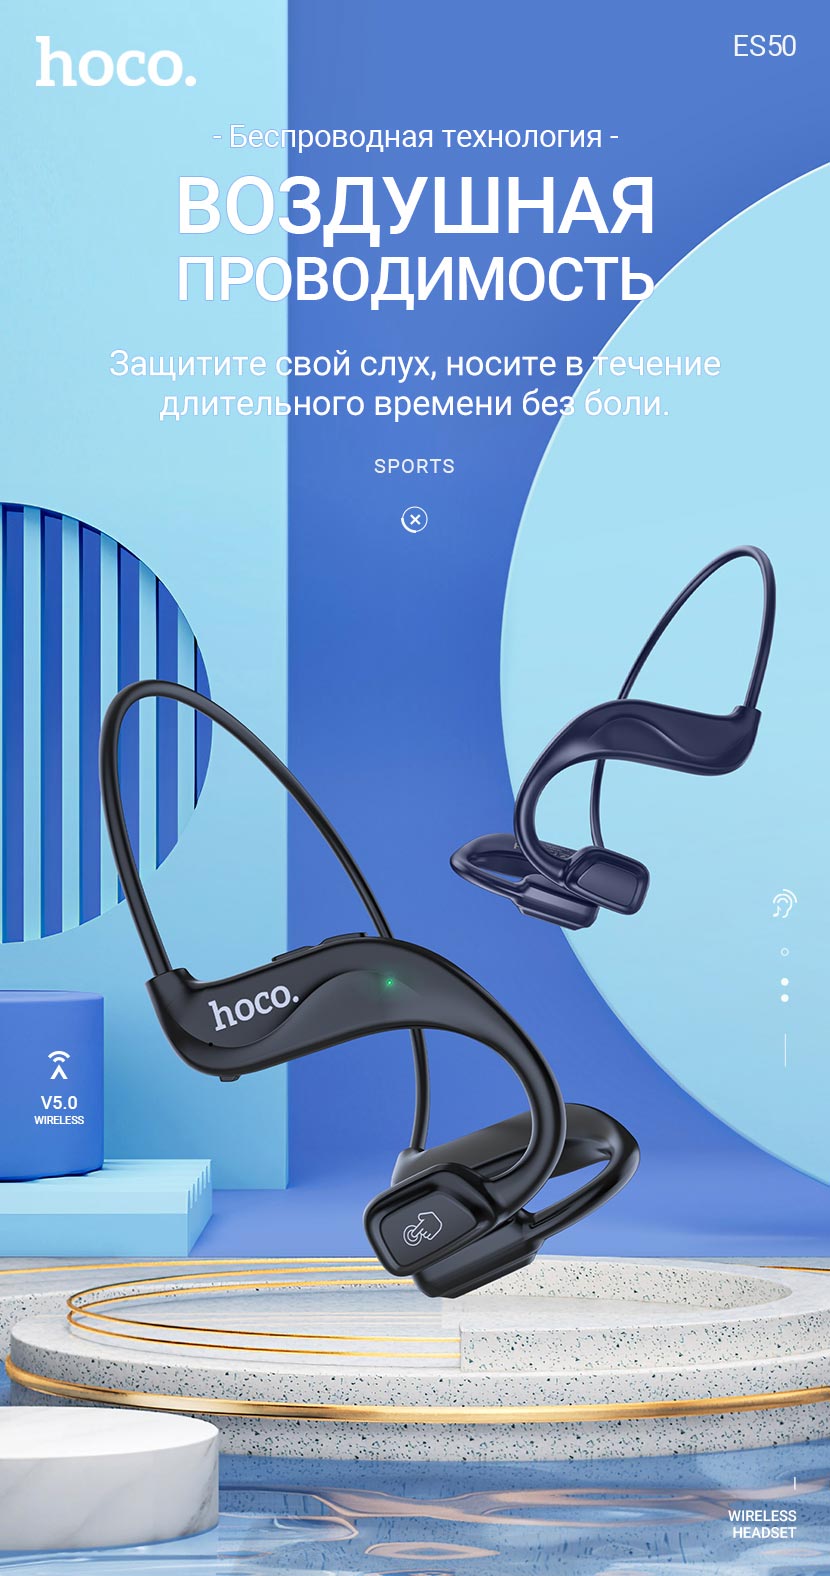 hoco news es50 rima air conduction bt headset ru